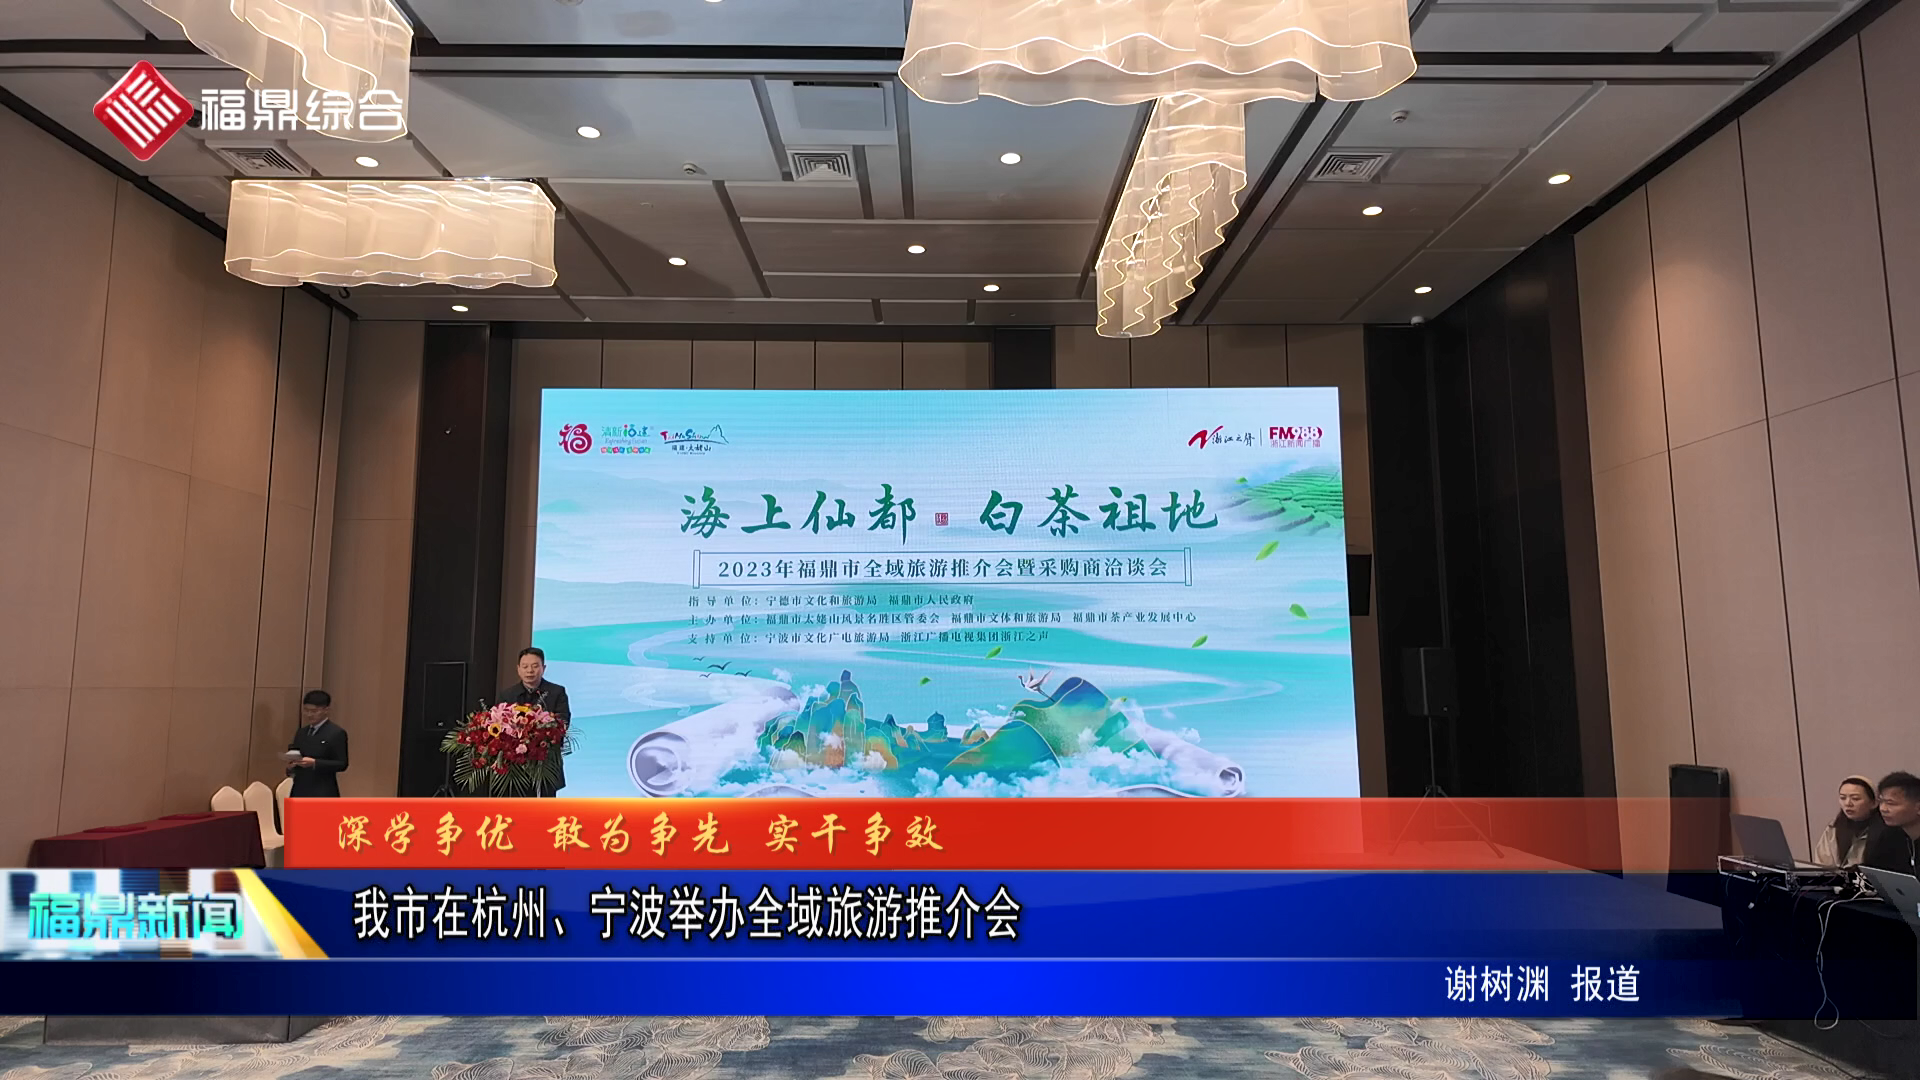 我市在杭州、宁波举办全域旅游推介会